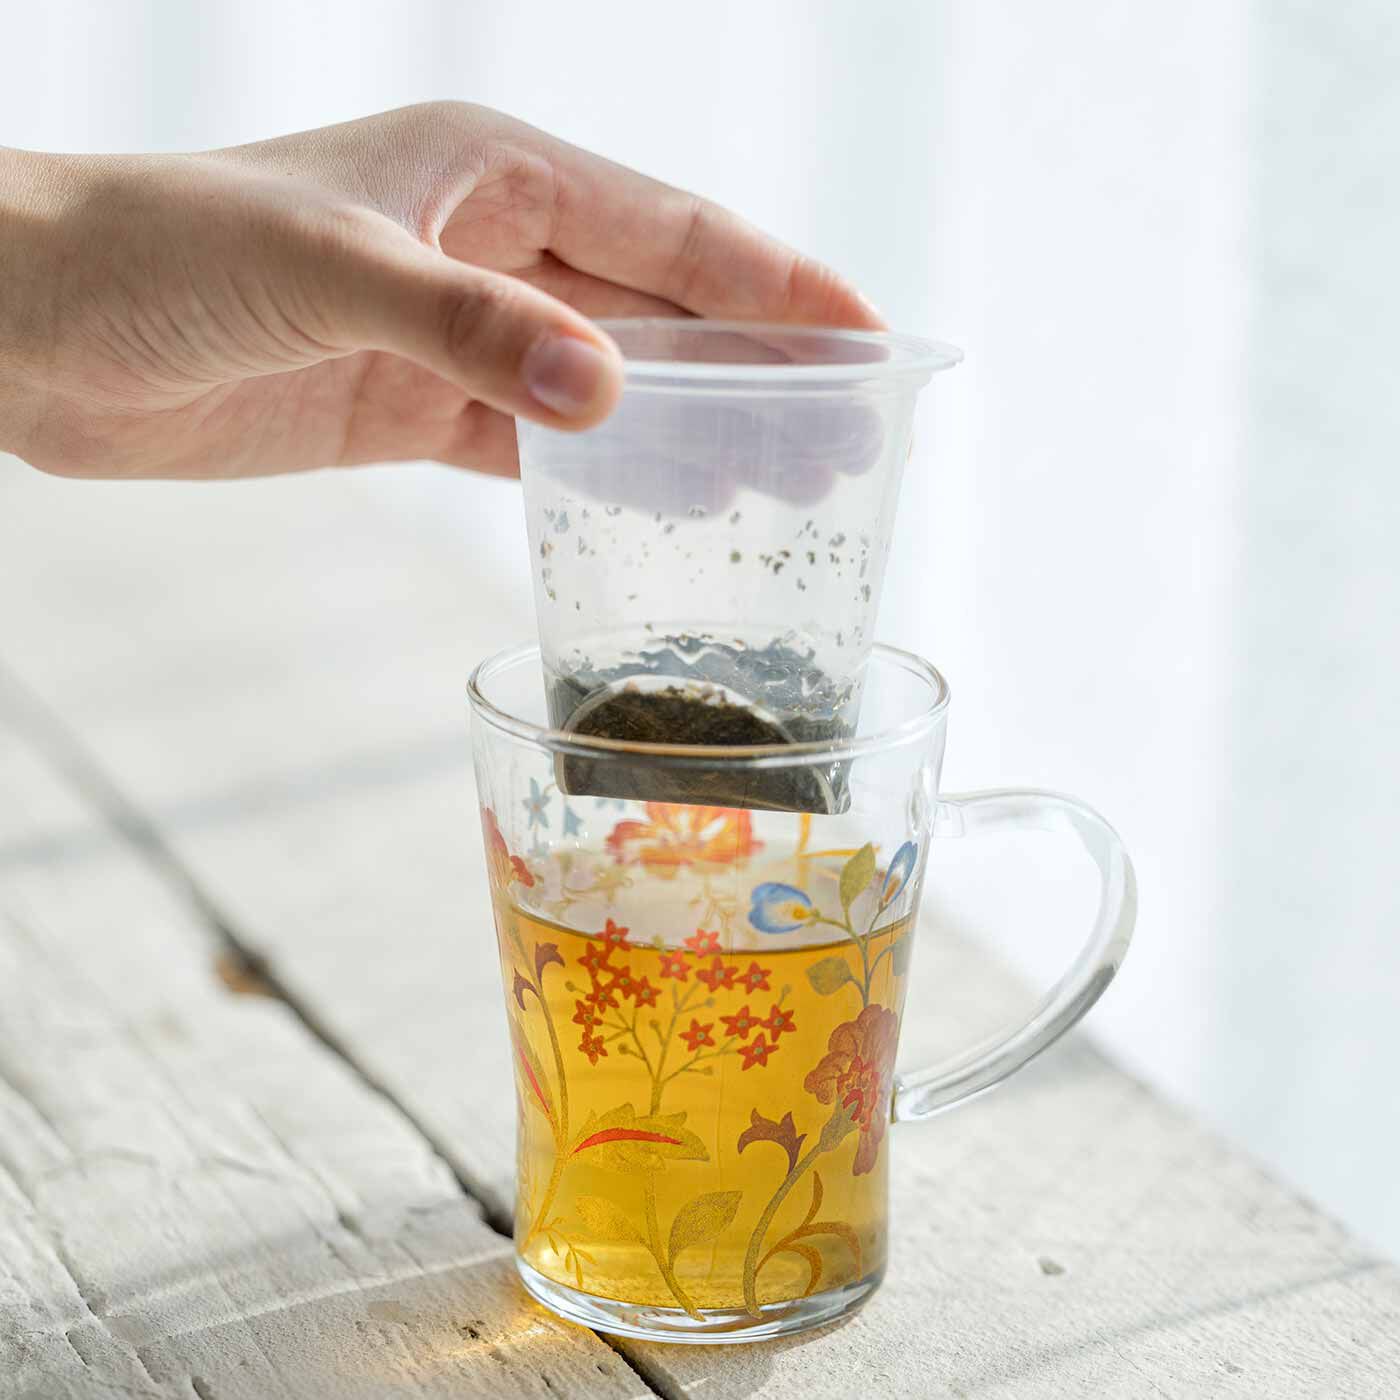 フェリシモメリー|am＆be アンティークフラワー ほっと一息 優雅なティーパーティー 茶こし付き耐熱ガラスのマグカップセット|茶こし付きでティーポット不要。一人分だけを淹れたいときも便利。